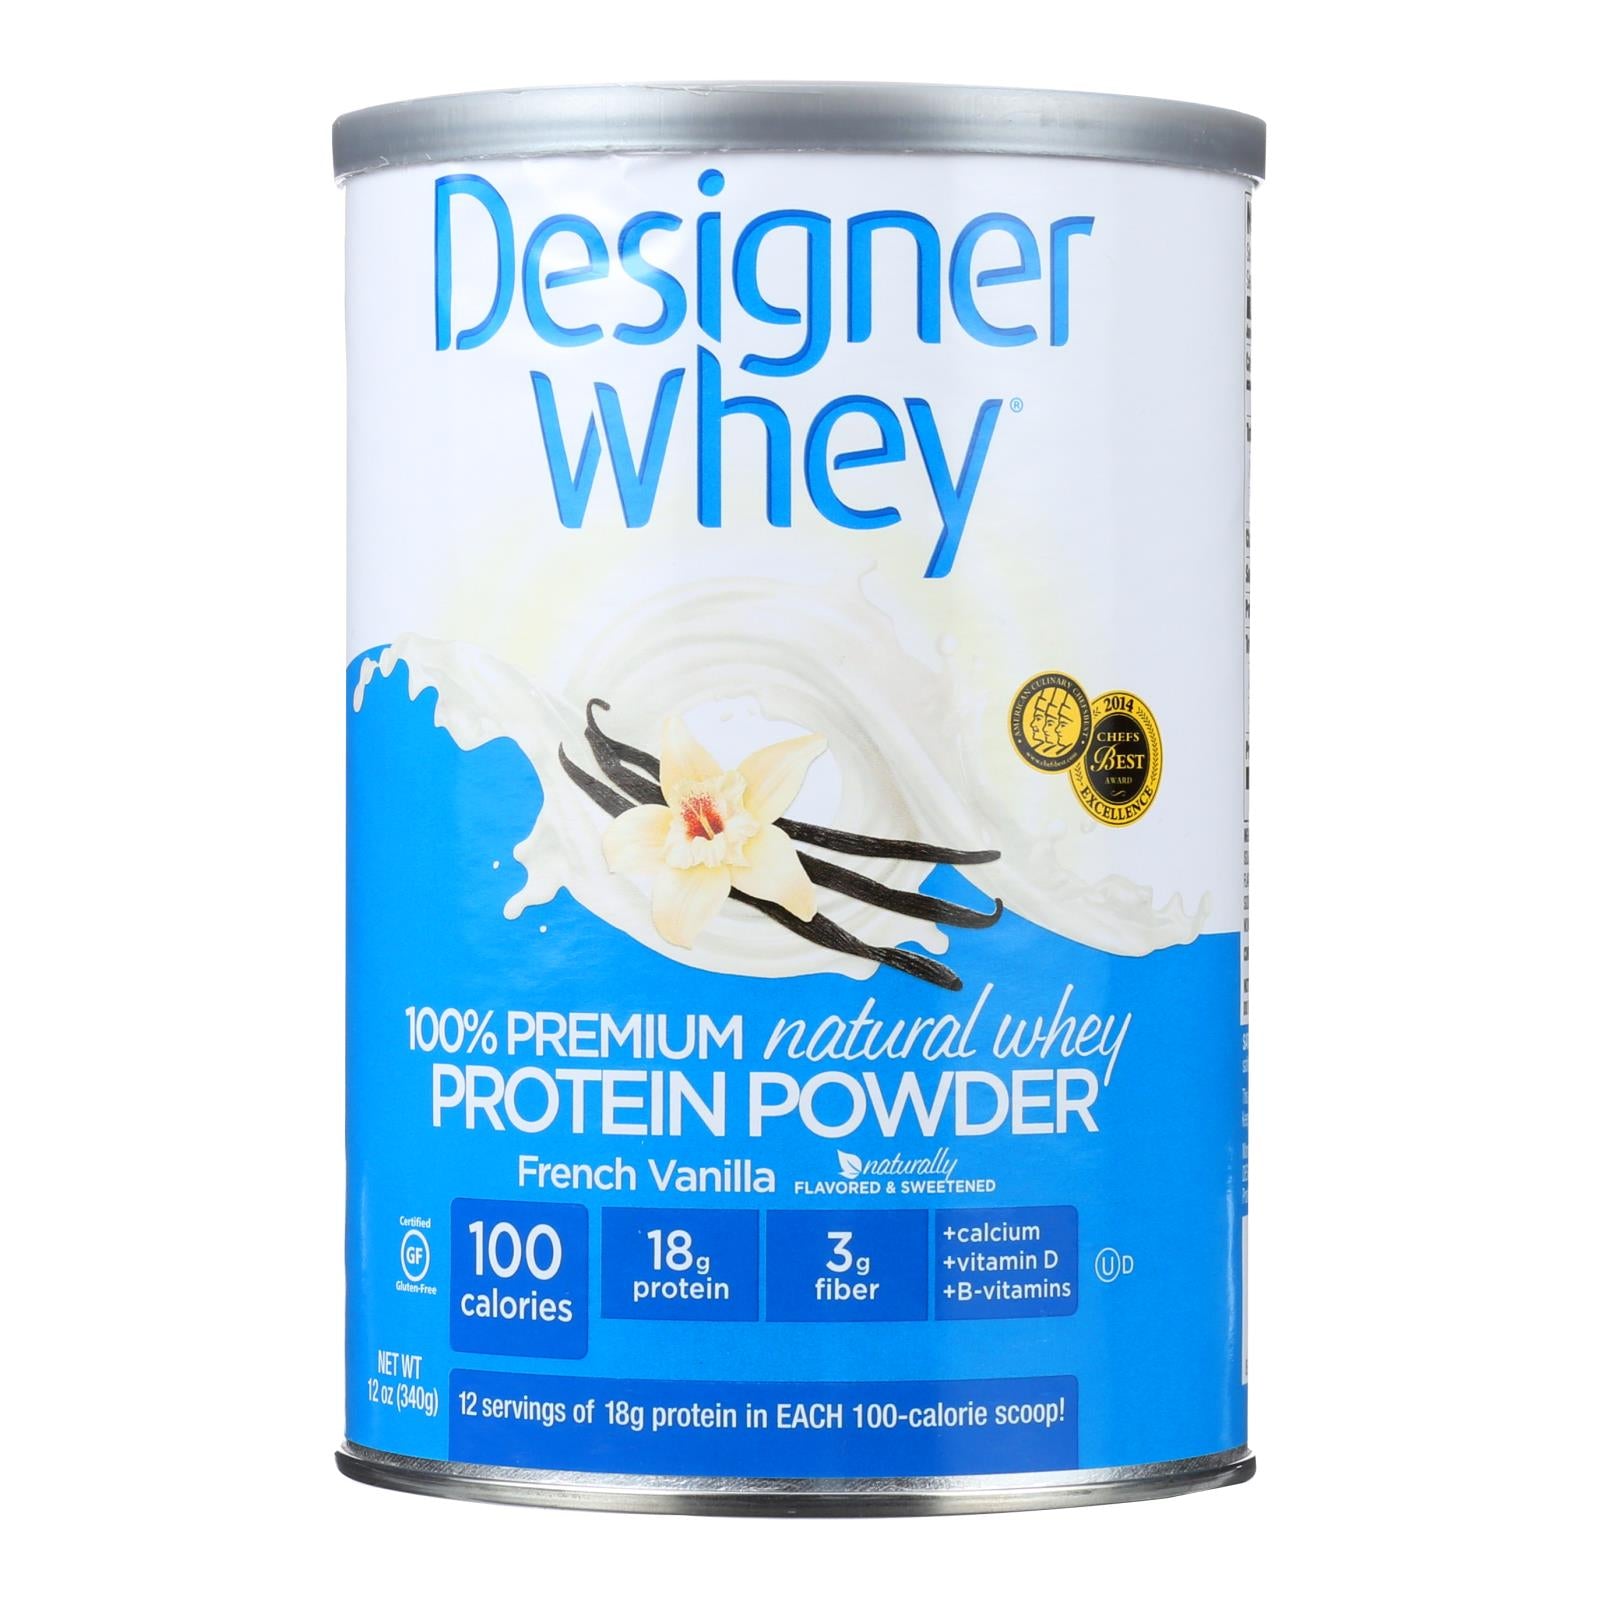 Designer Whey - Protein Powder - French Vanilla - 12 Oz